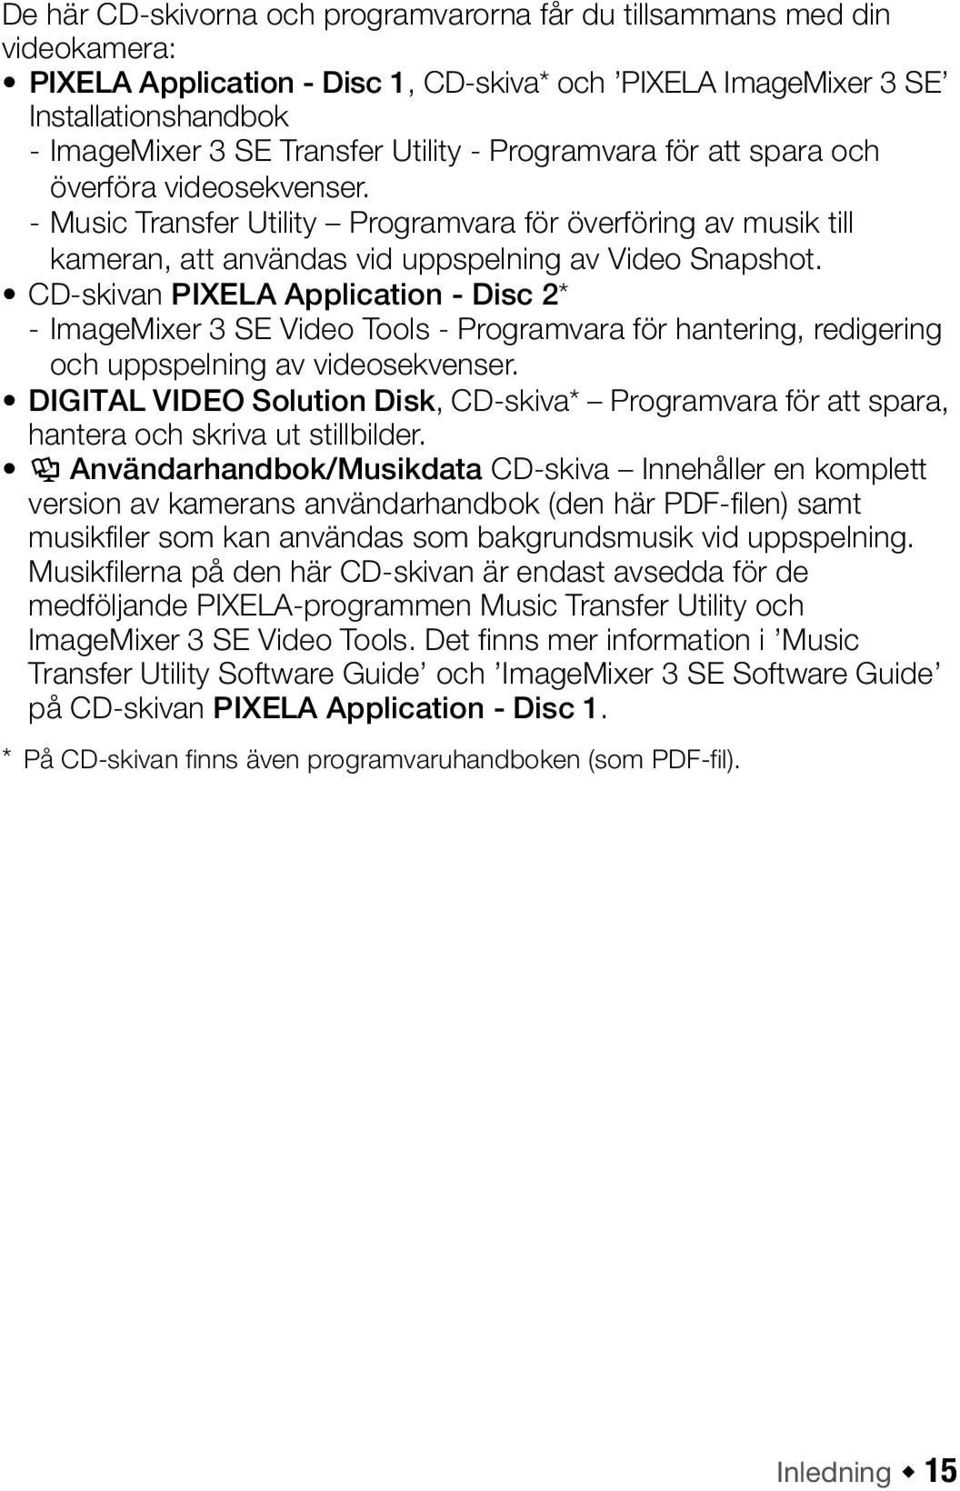 CD-skivan PIXELA Application - Disc 2* - ImageMixer 3 SE Video Tools - Programvara för hantering, redigering och uppspelning av videosekvenser.